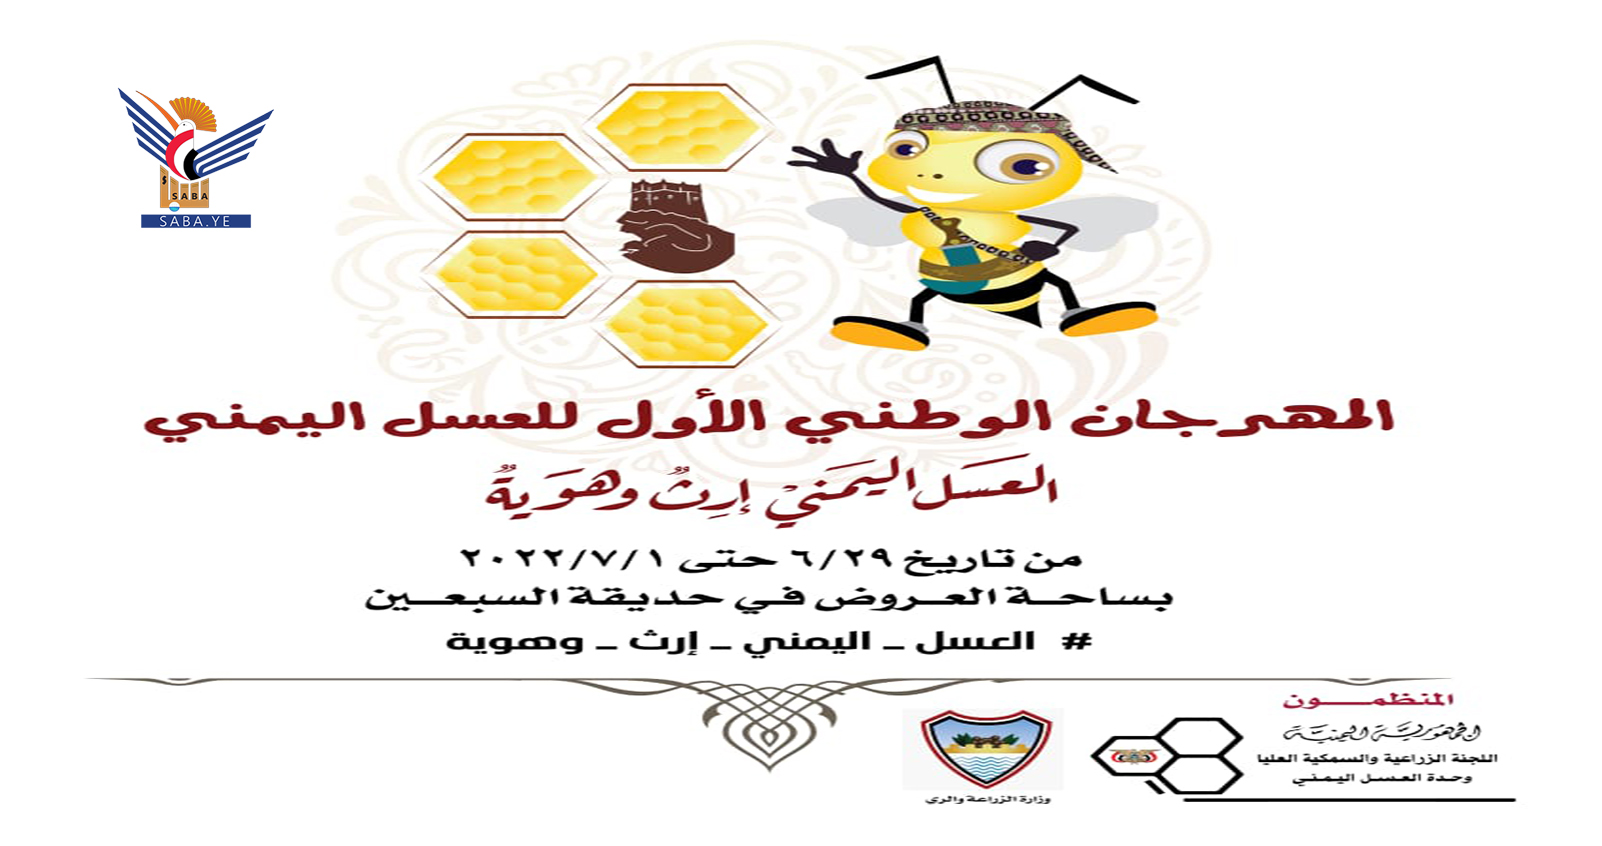   Mercredi prochain.. le début des activités du premier festival national du miel yéménite